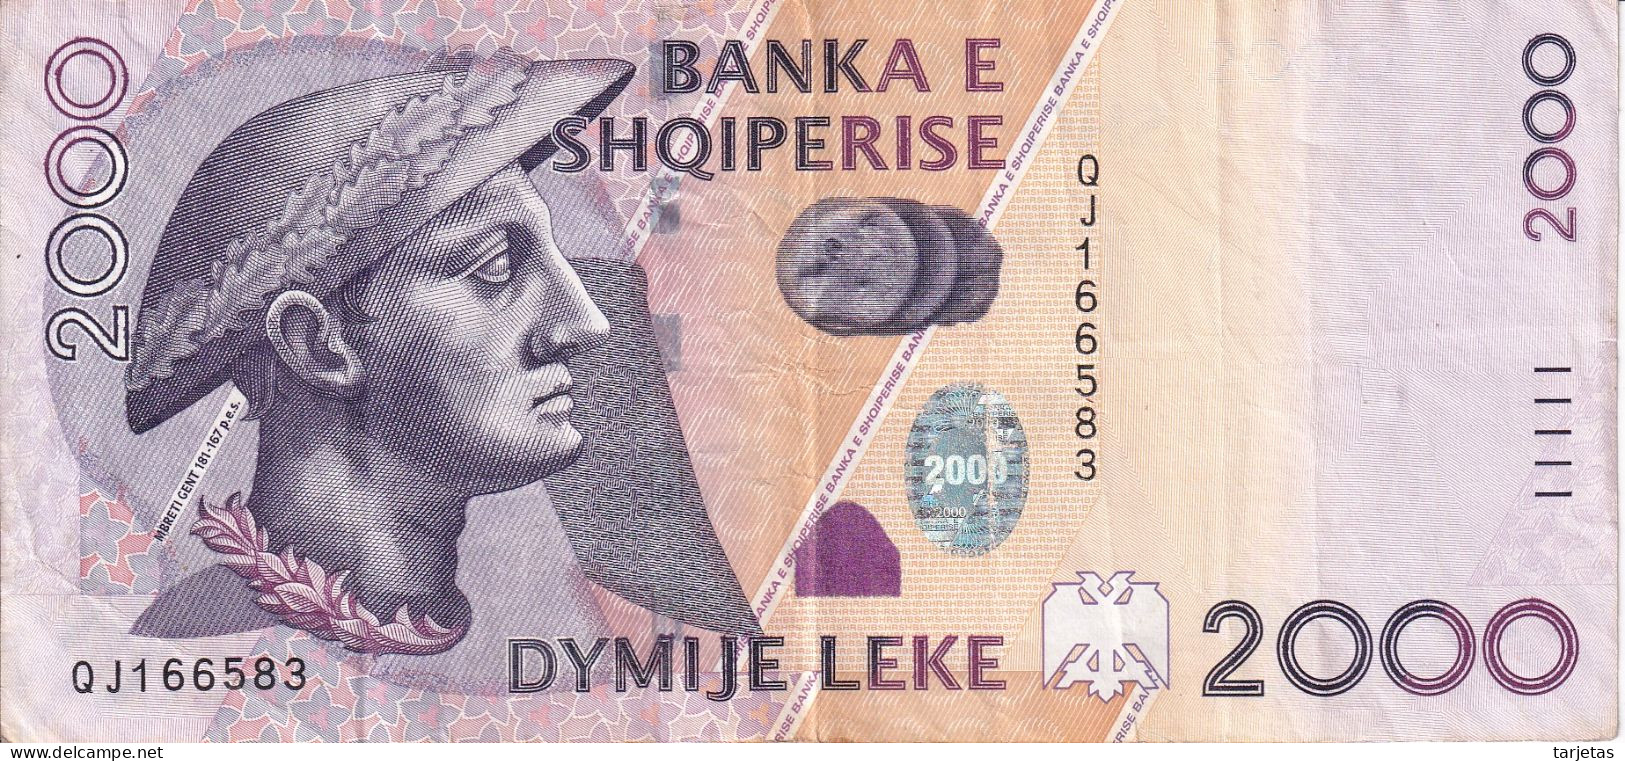 BILLETE DE ALBANIA DE 2000 LEKE DEL AÑO 2012 (BANKNOTE) - Albanie